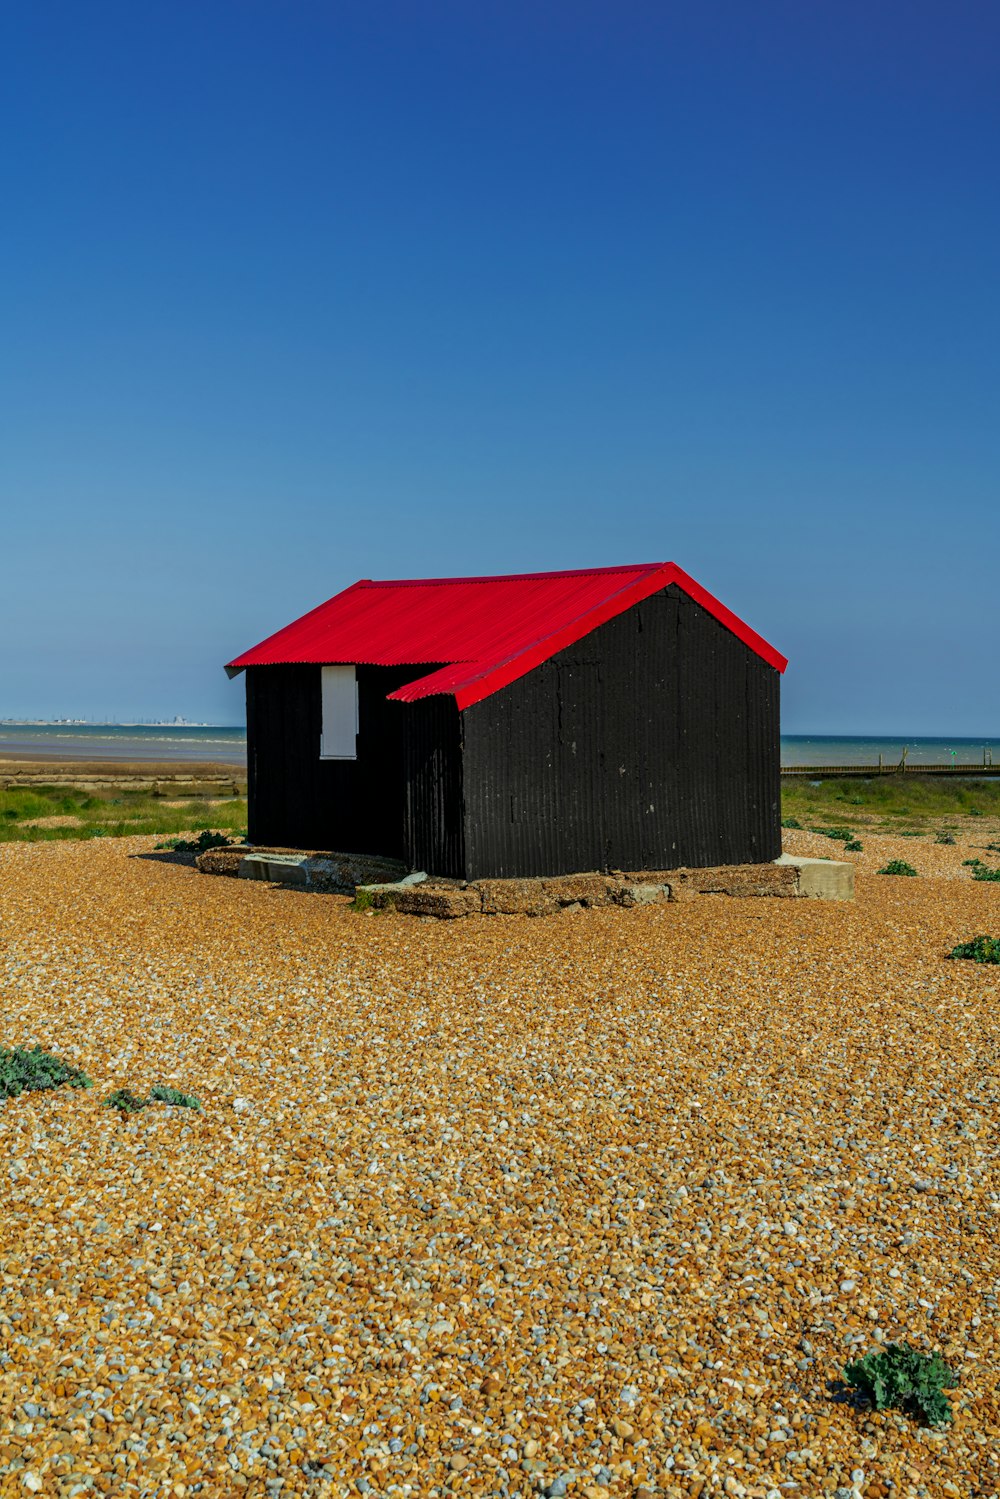 maison en bois rouge sur un champ brun sous un ciel bleu pendant la journée